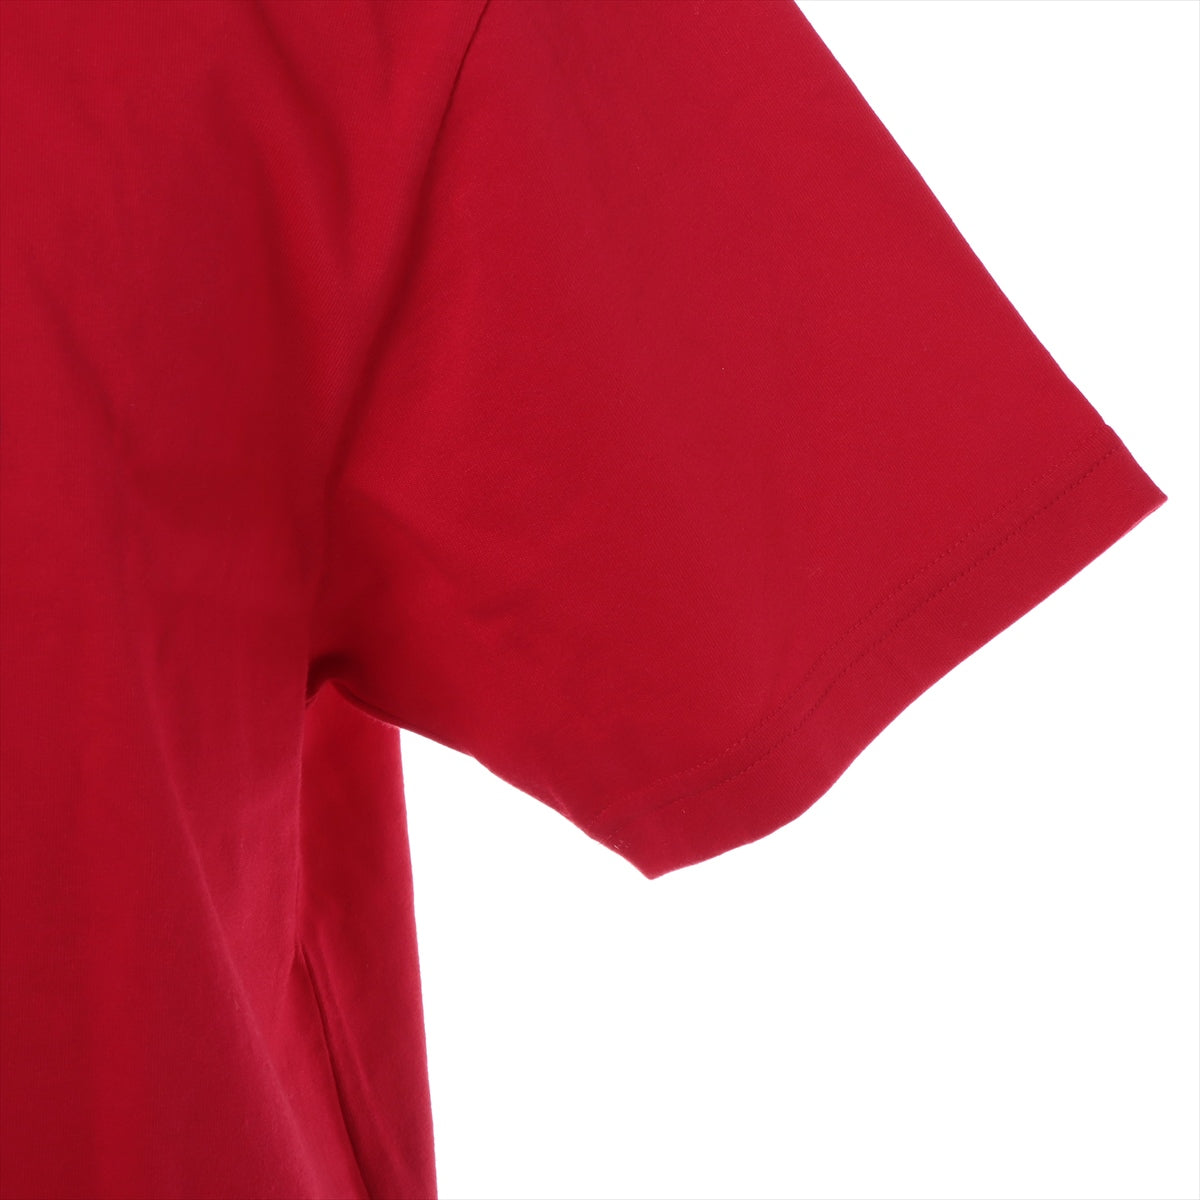 バレンシアガ 19年 コットン Tシャツ S メンズ レッド  594599